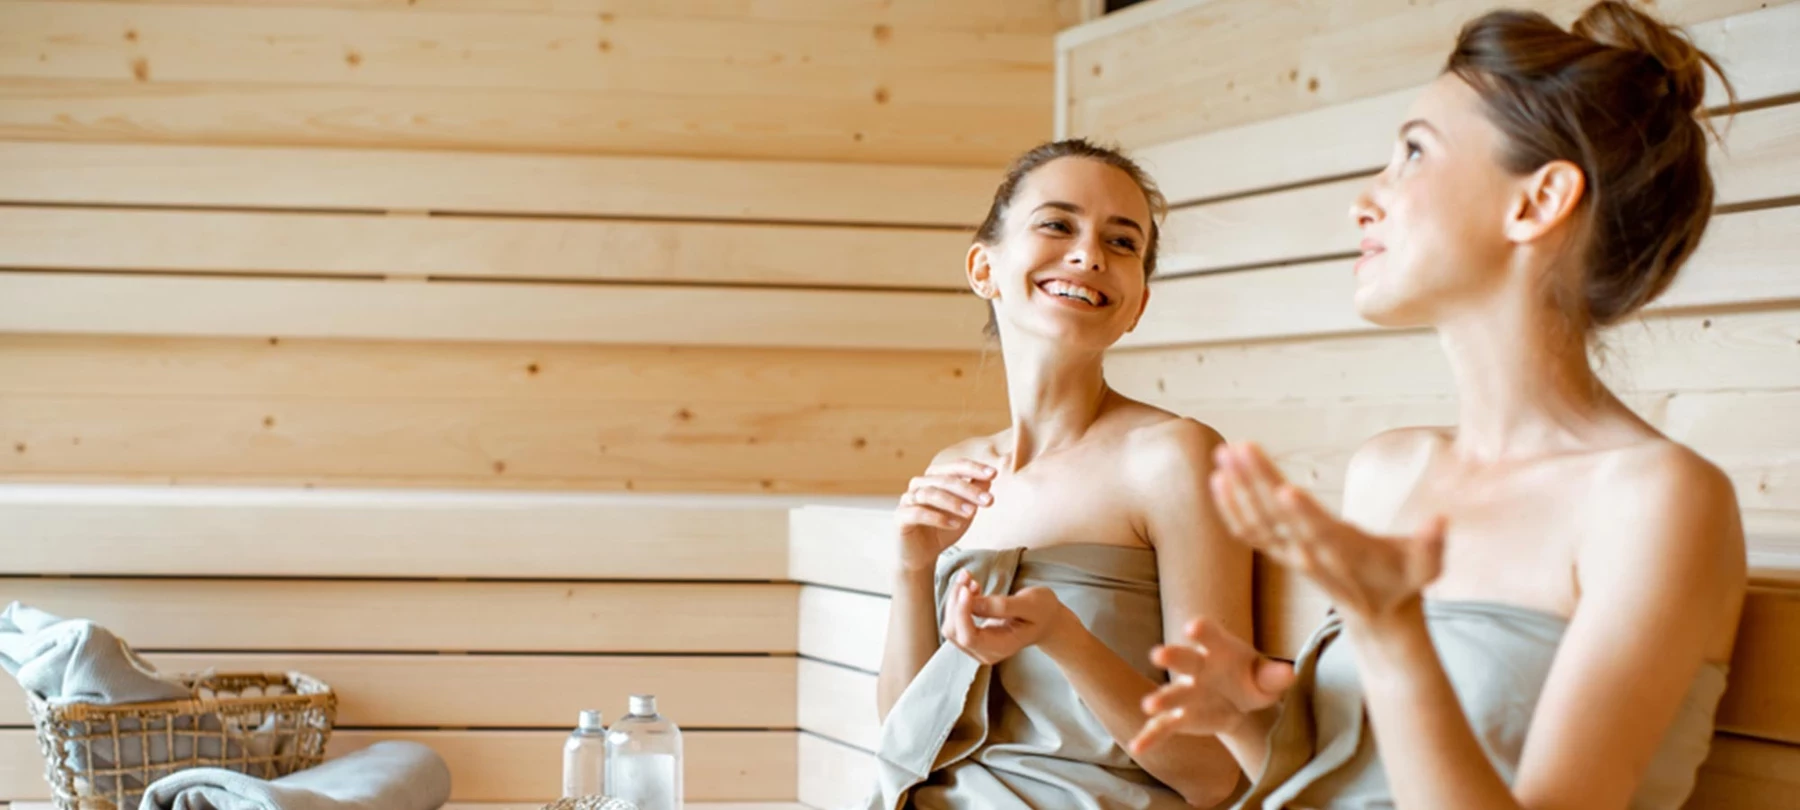 Goedkoop naar de sauna? 7 bespaartips van experts